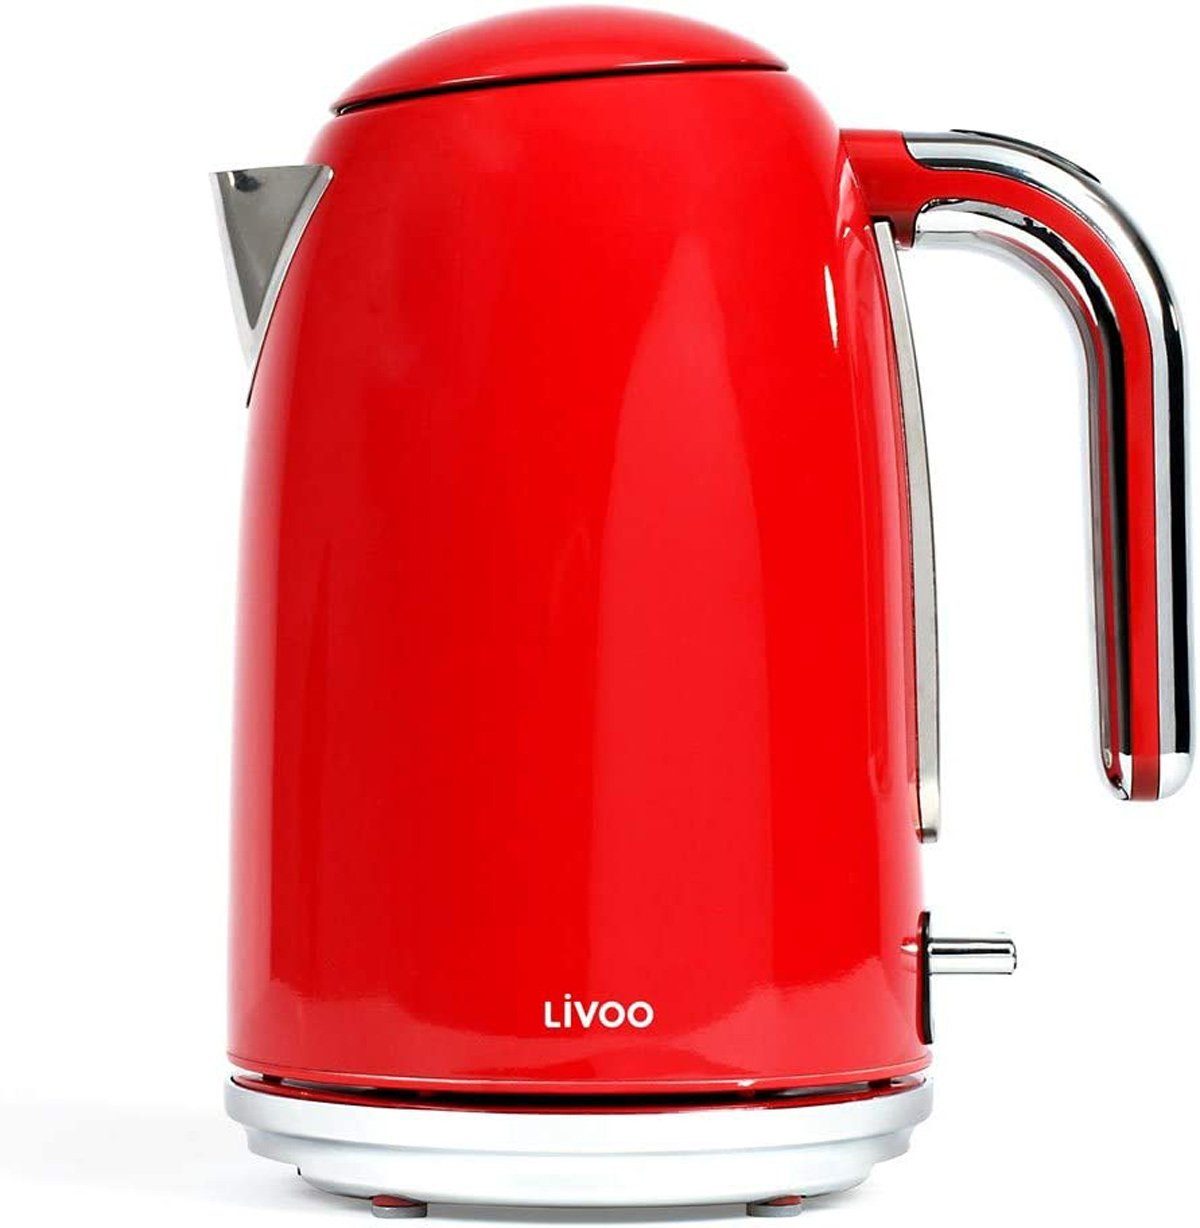 LIVOO Wasserkocher DOD180R rot, 2200 W